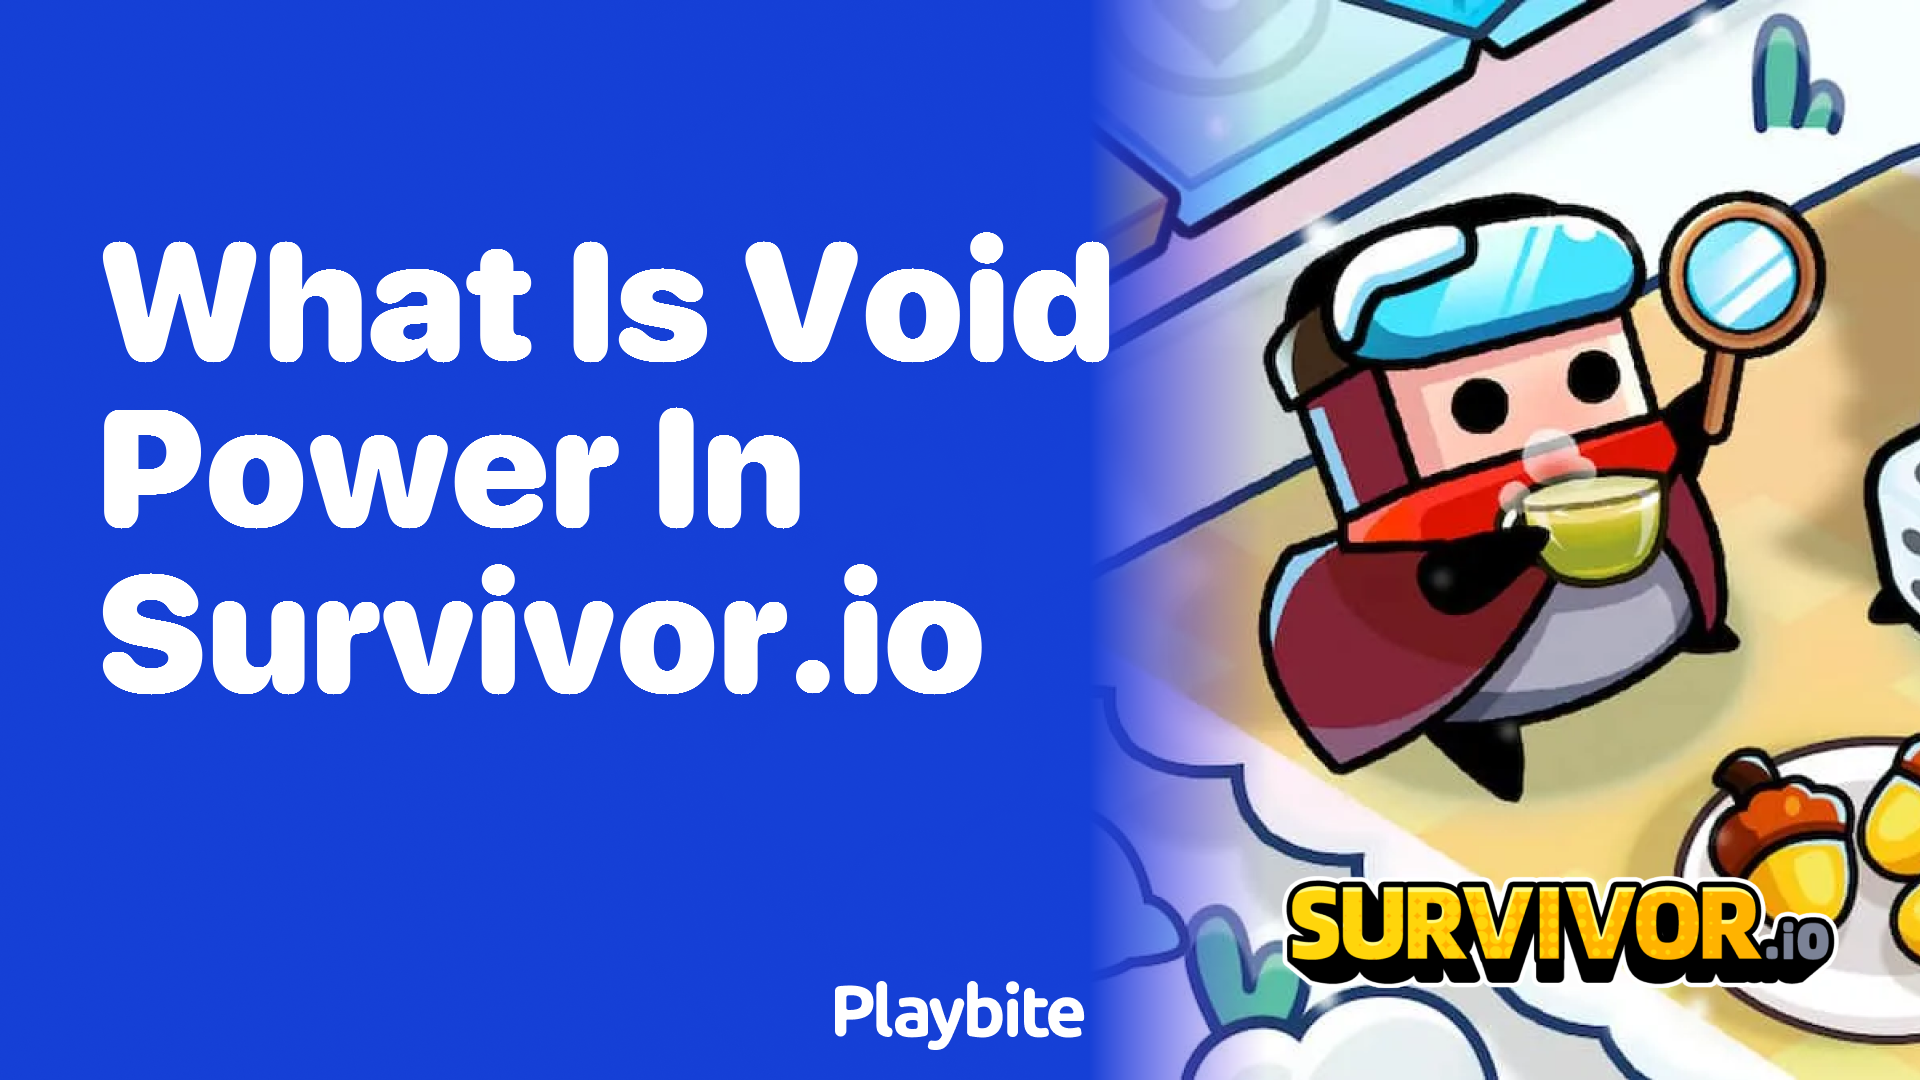 What Is Void Power in Survivor.io?